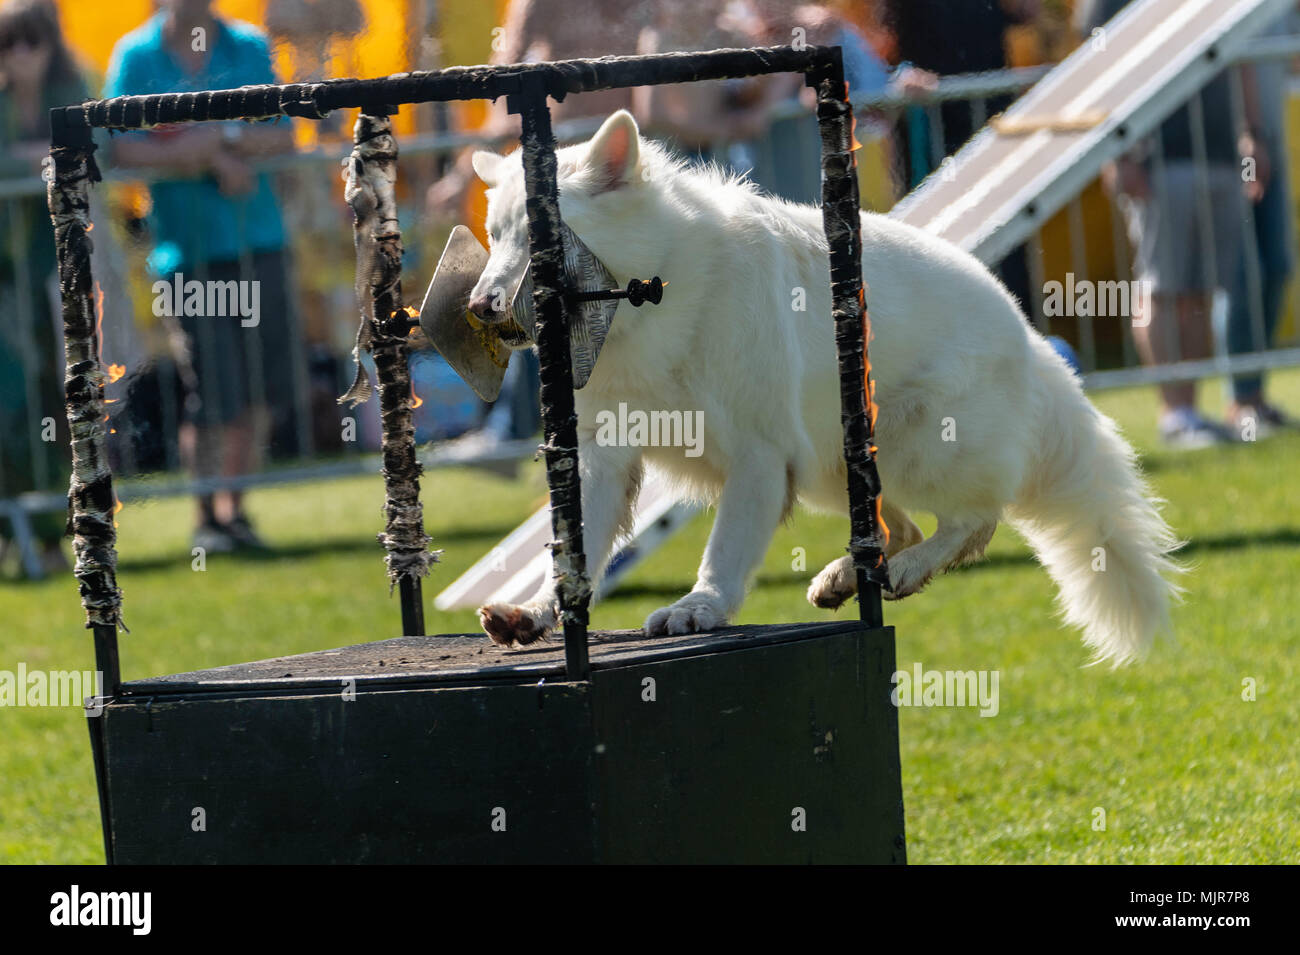 Brentwood, Essex 6 Mai 2018 Un chien saute par beringurning arceaux à l'ensemble des chiens show, Brentwood, Essex, Ian Davidson Crédit/Alamy Live News Banque D'Images